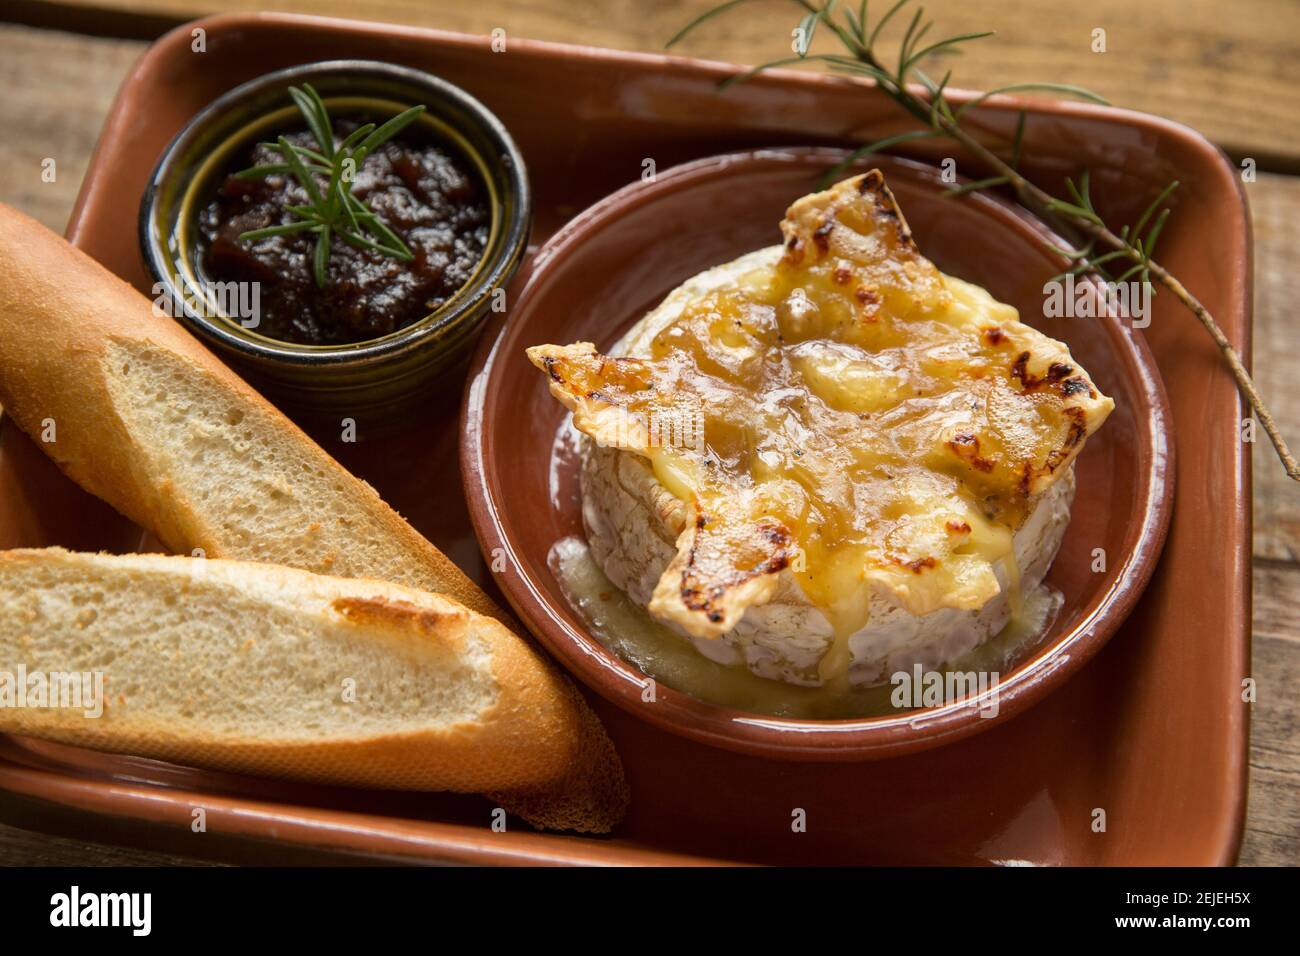 Camembert francese che è stato cotto in forno con tartufo, aglio e salsa al miele, servito con pane francese tostato e chutney di cipolla caramellata Foto Stock